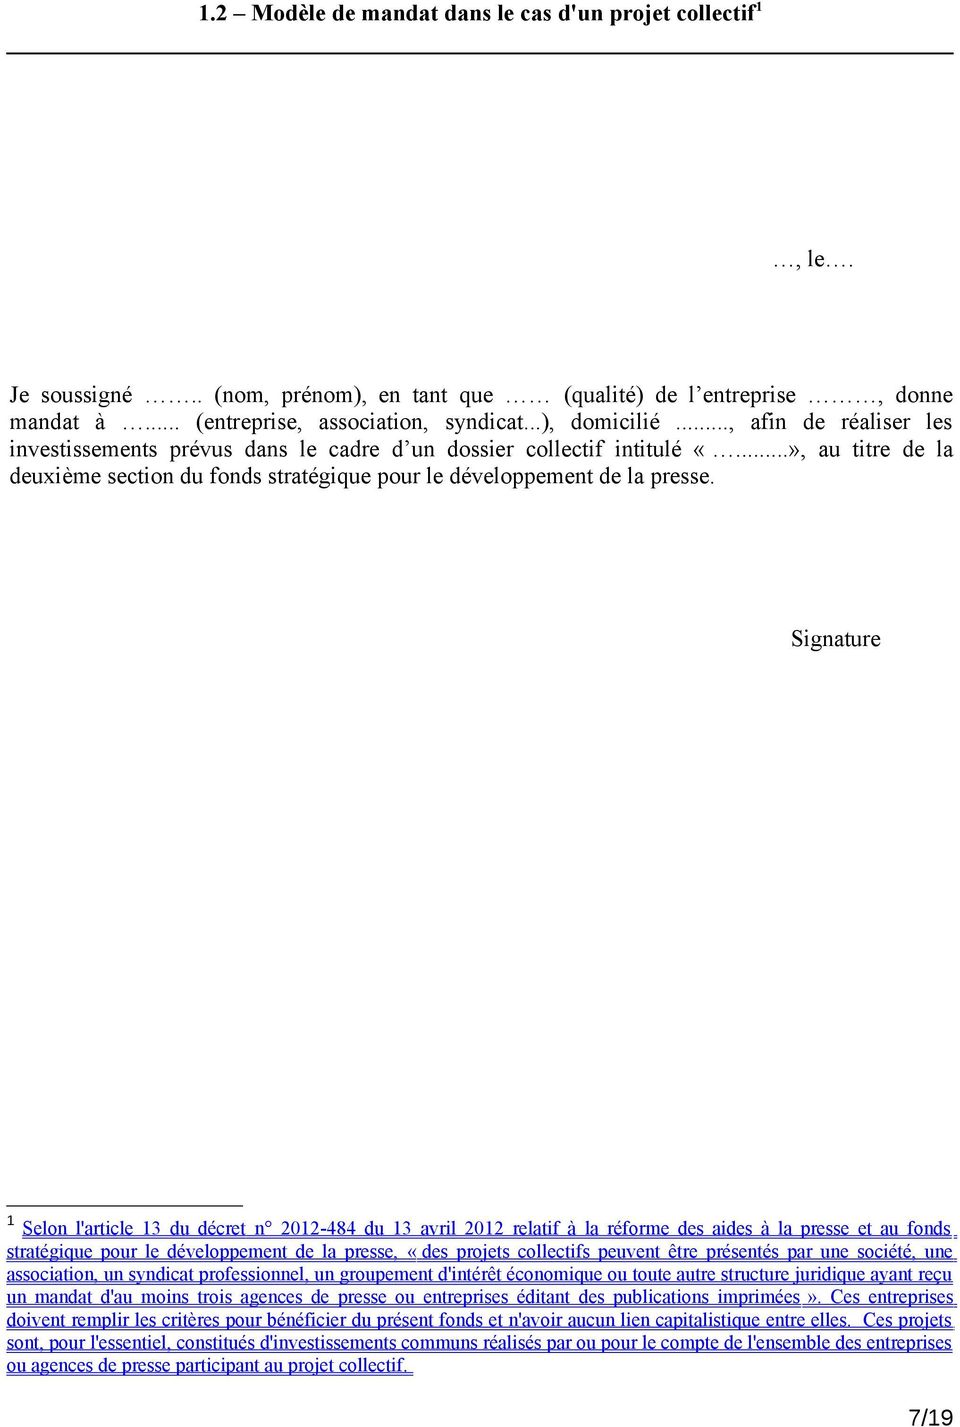 Signature 1 Selon l'article 13 du décret n 2012-484 du 13 avril 2012 relatif à la réforme des aides à la presse et au fonds stratégique pour le développement de la presse, «des projets collectifs